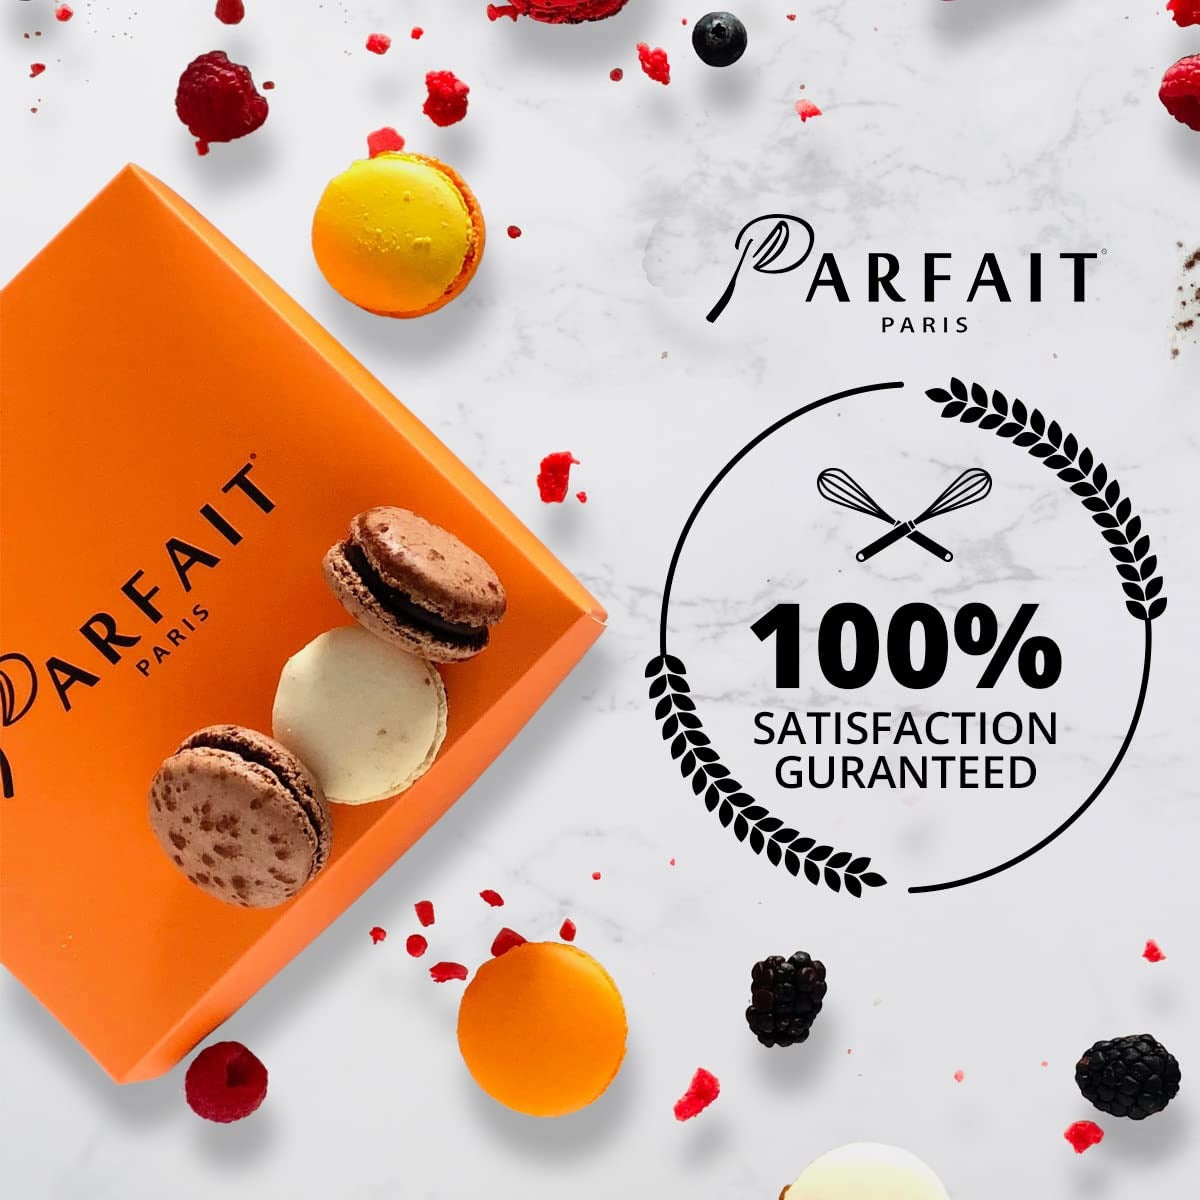 Parfait Paris Satisfaction Guaranteed